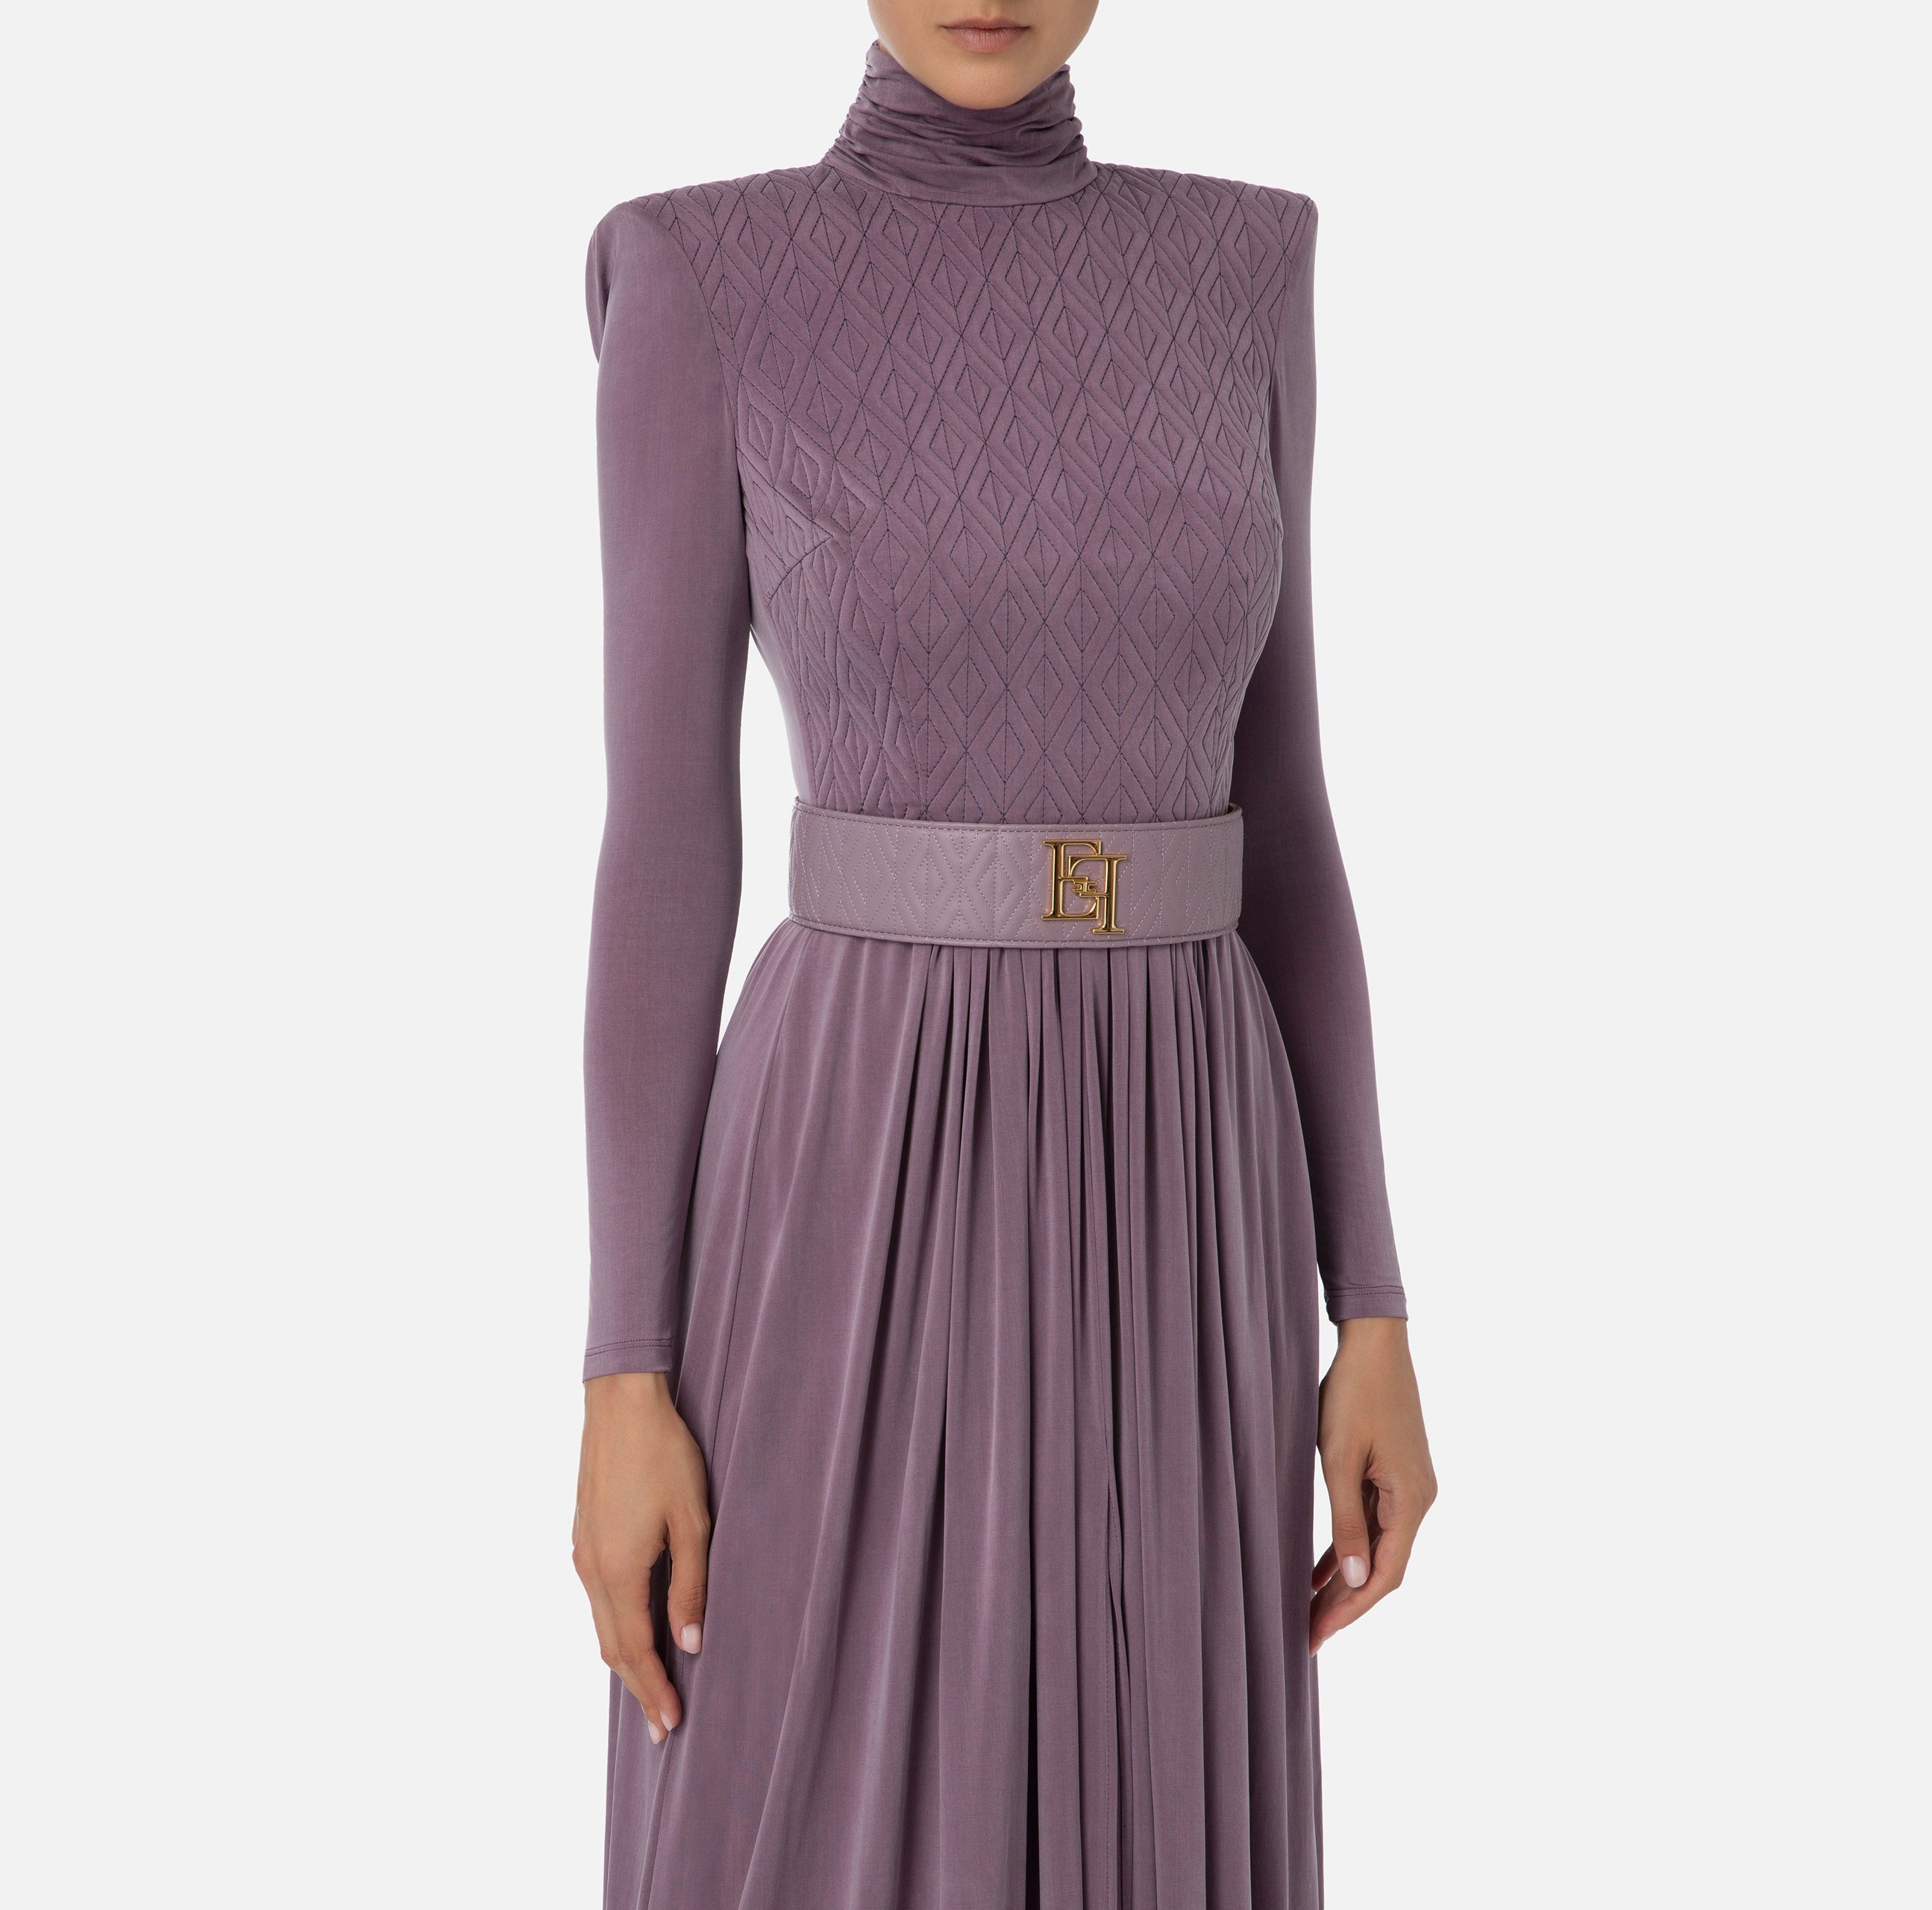 Elisabetta Franchi Women's Dress AB39336E2 Candy violet